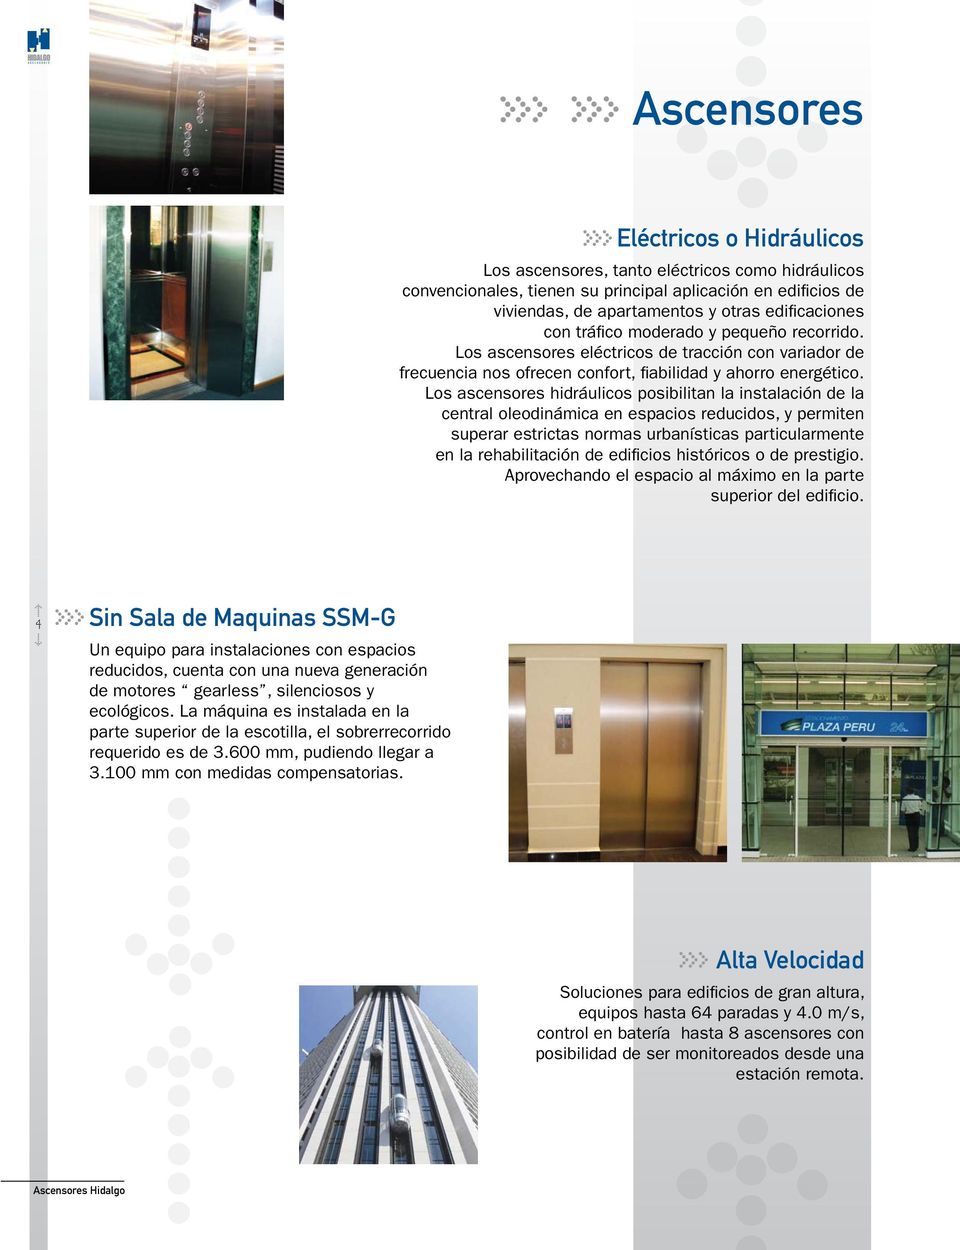 Los ascensores hidráulicos posibilitan la instalación de la central oleodinámica en espacios reducidos, y permiten superar estrictas normas urbanísticas particularmente en la rehabilitación de edifi